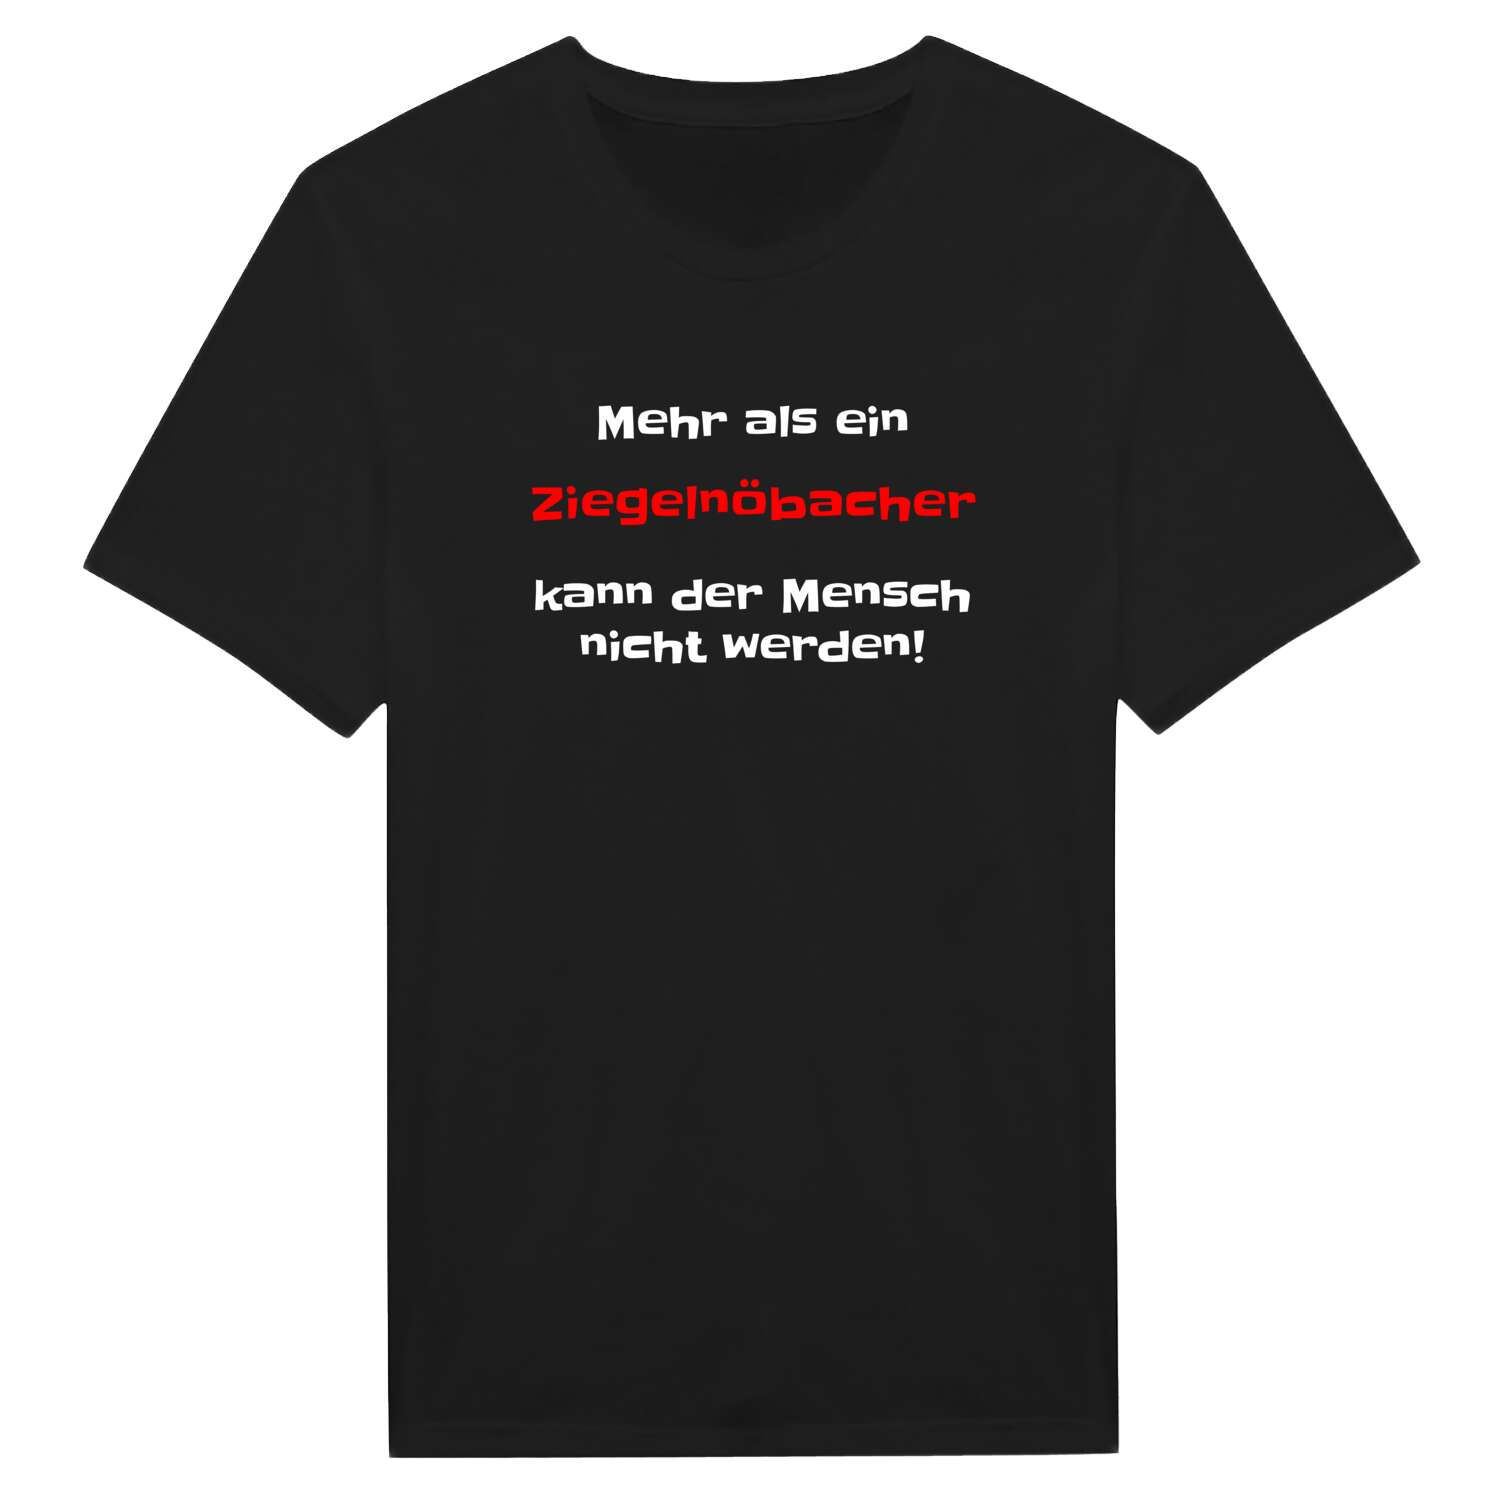 Ziegelnöbach T-Shirt »Mehr als ein«